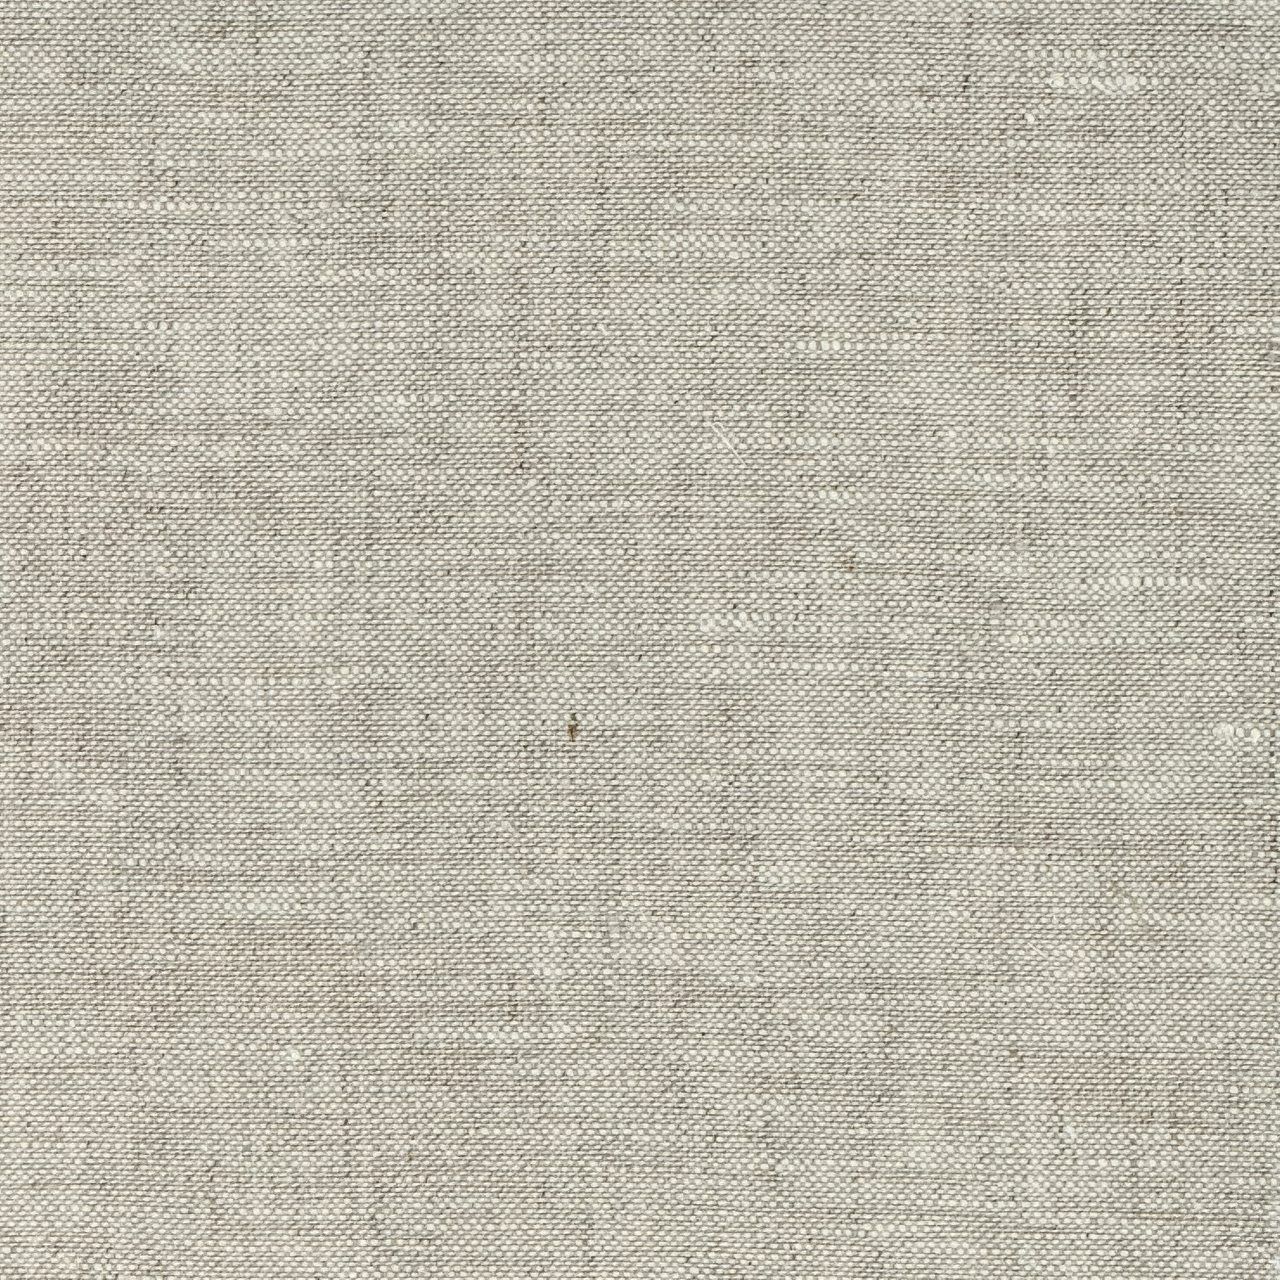 Leinen Gewebe 482/JU - Wailand Textil